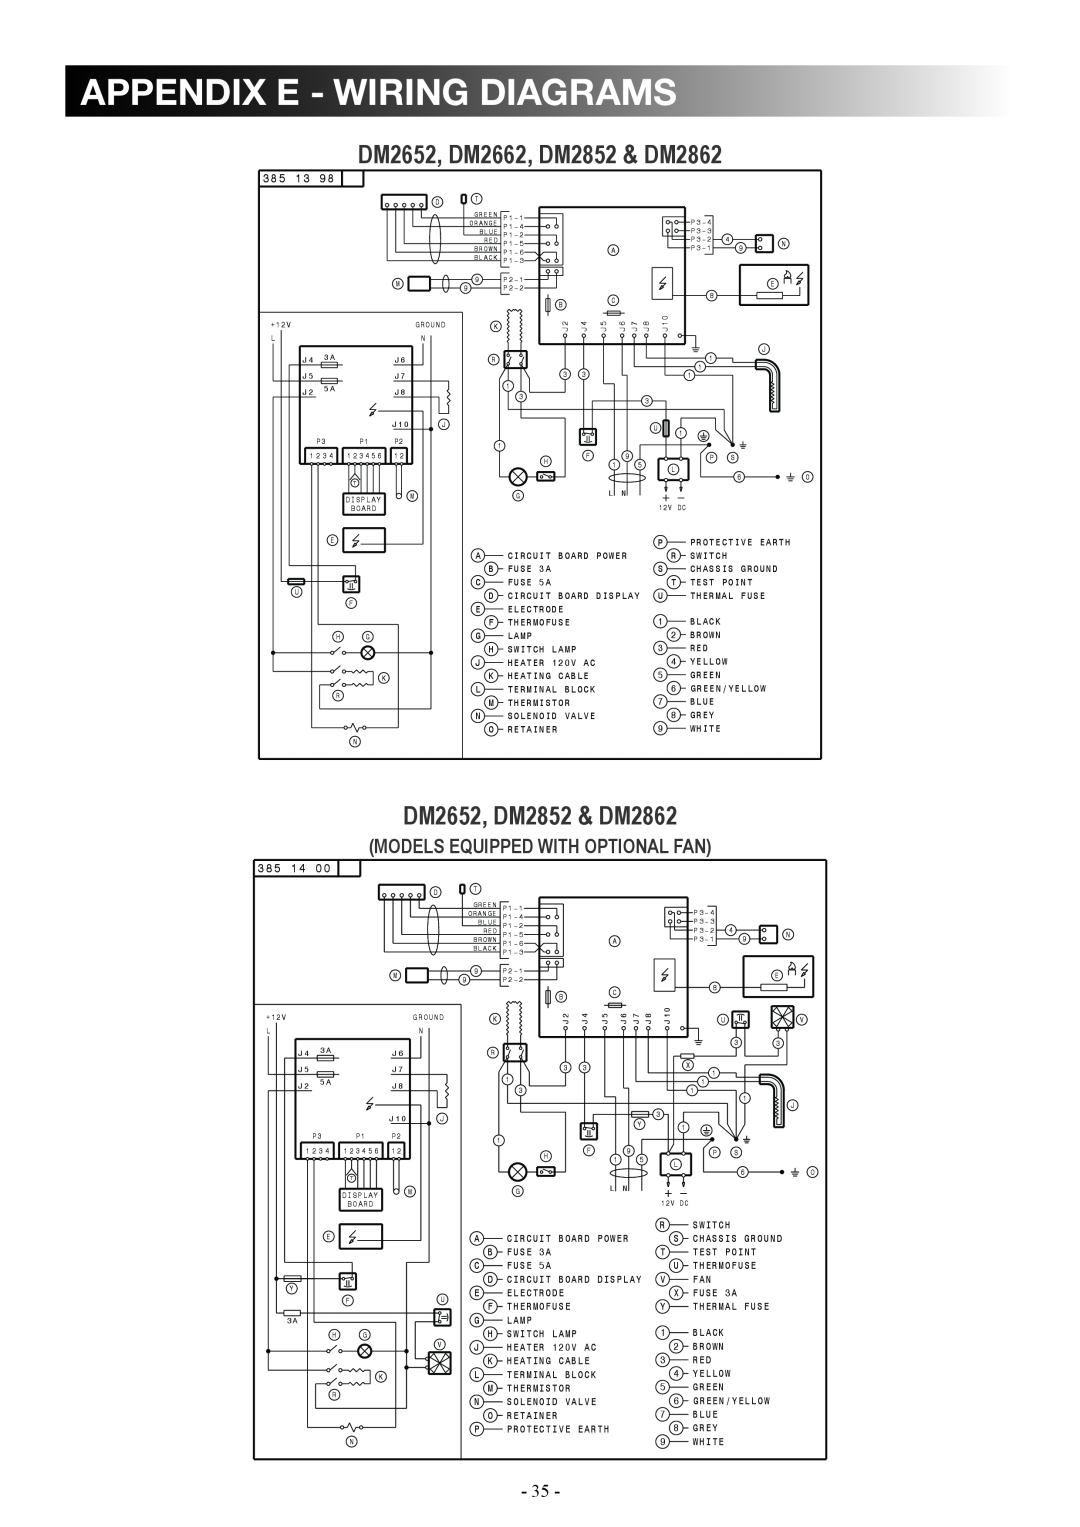 Dometic manual appendix e - wiring diagrams, DM2652, DM2662, DM2852 & DM2862, DM2652, DM2852 & DM2862 